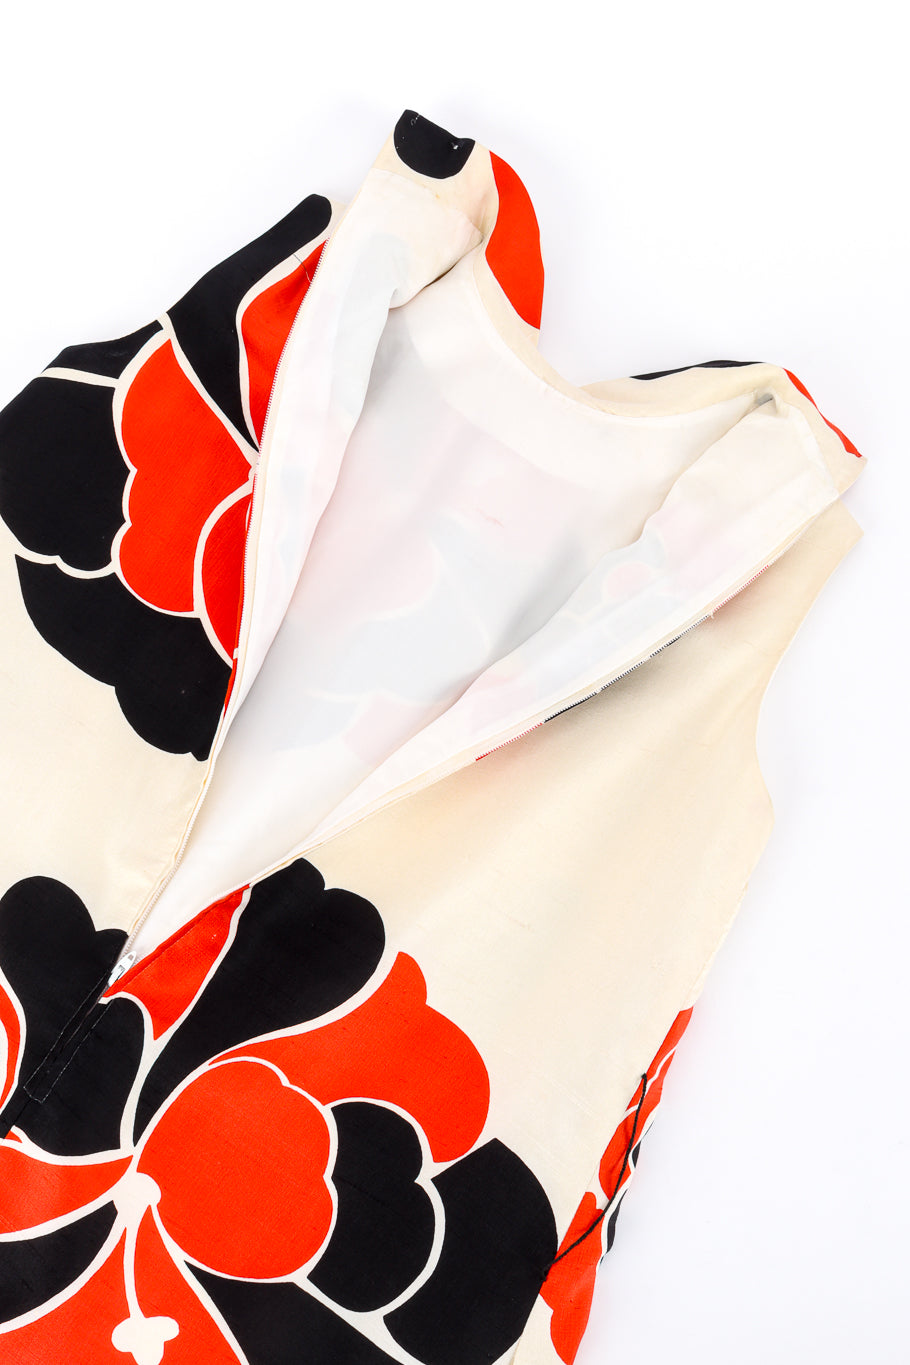 Vintage Charles Cooper Mod Flower Blouse, Pant & Sash Set top back unzipped @recess la